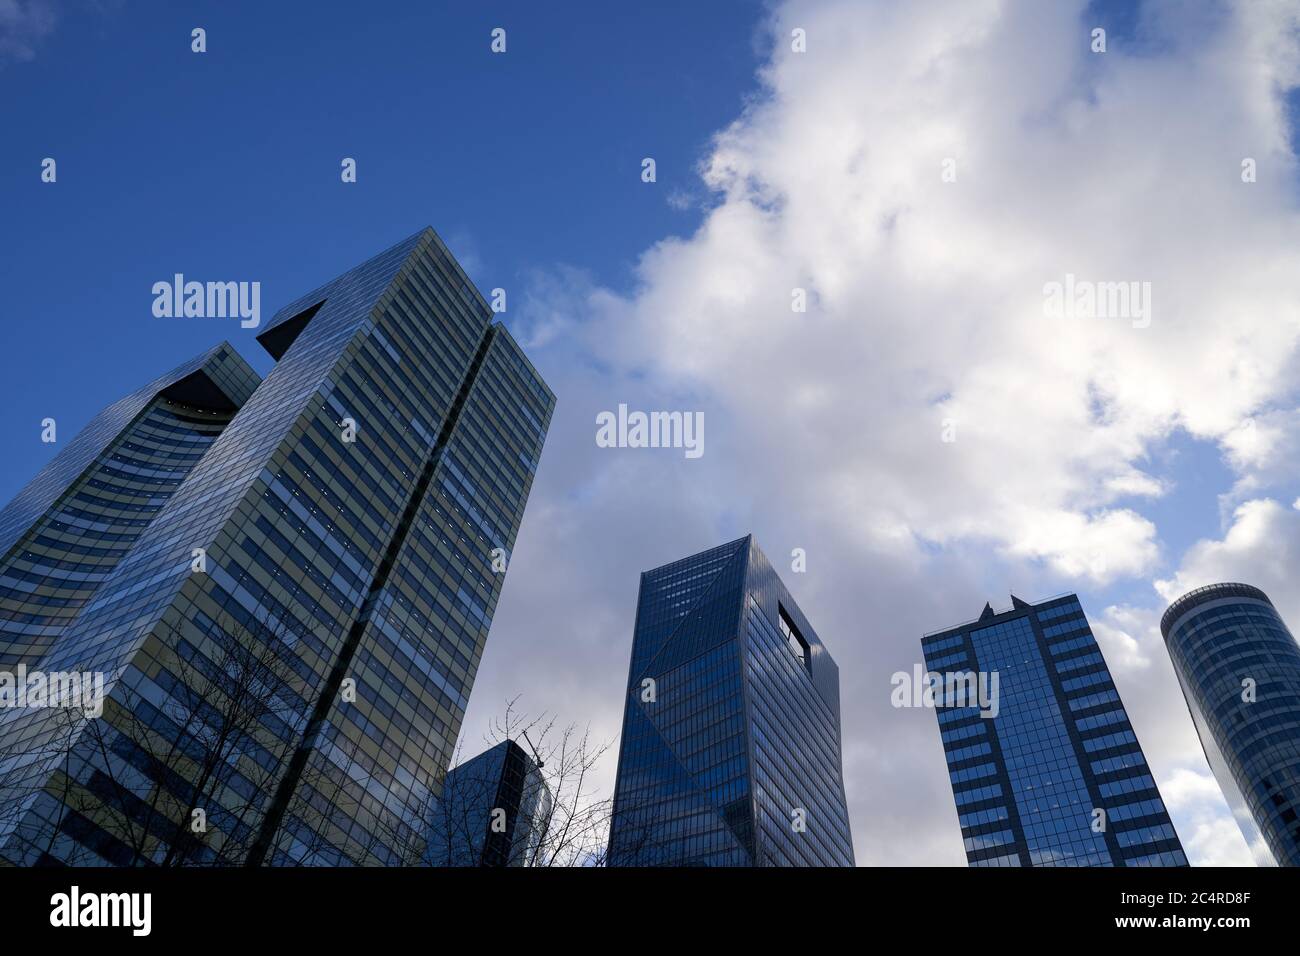 Siège social de KPMG, gratte-ciel et immeubles de bureaux dans le quartier d'affaires de la Défense, Paris Banque D'Images